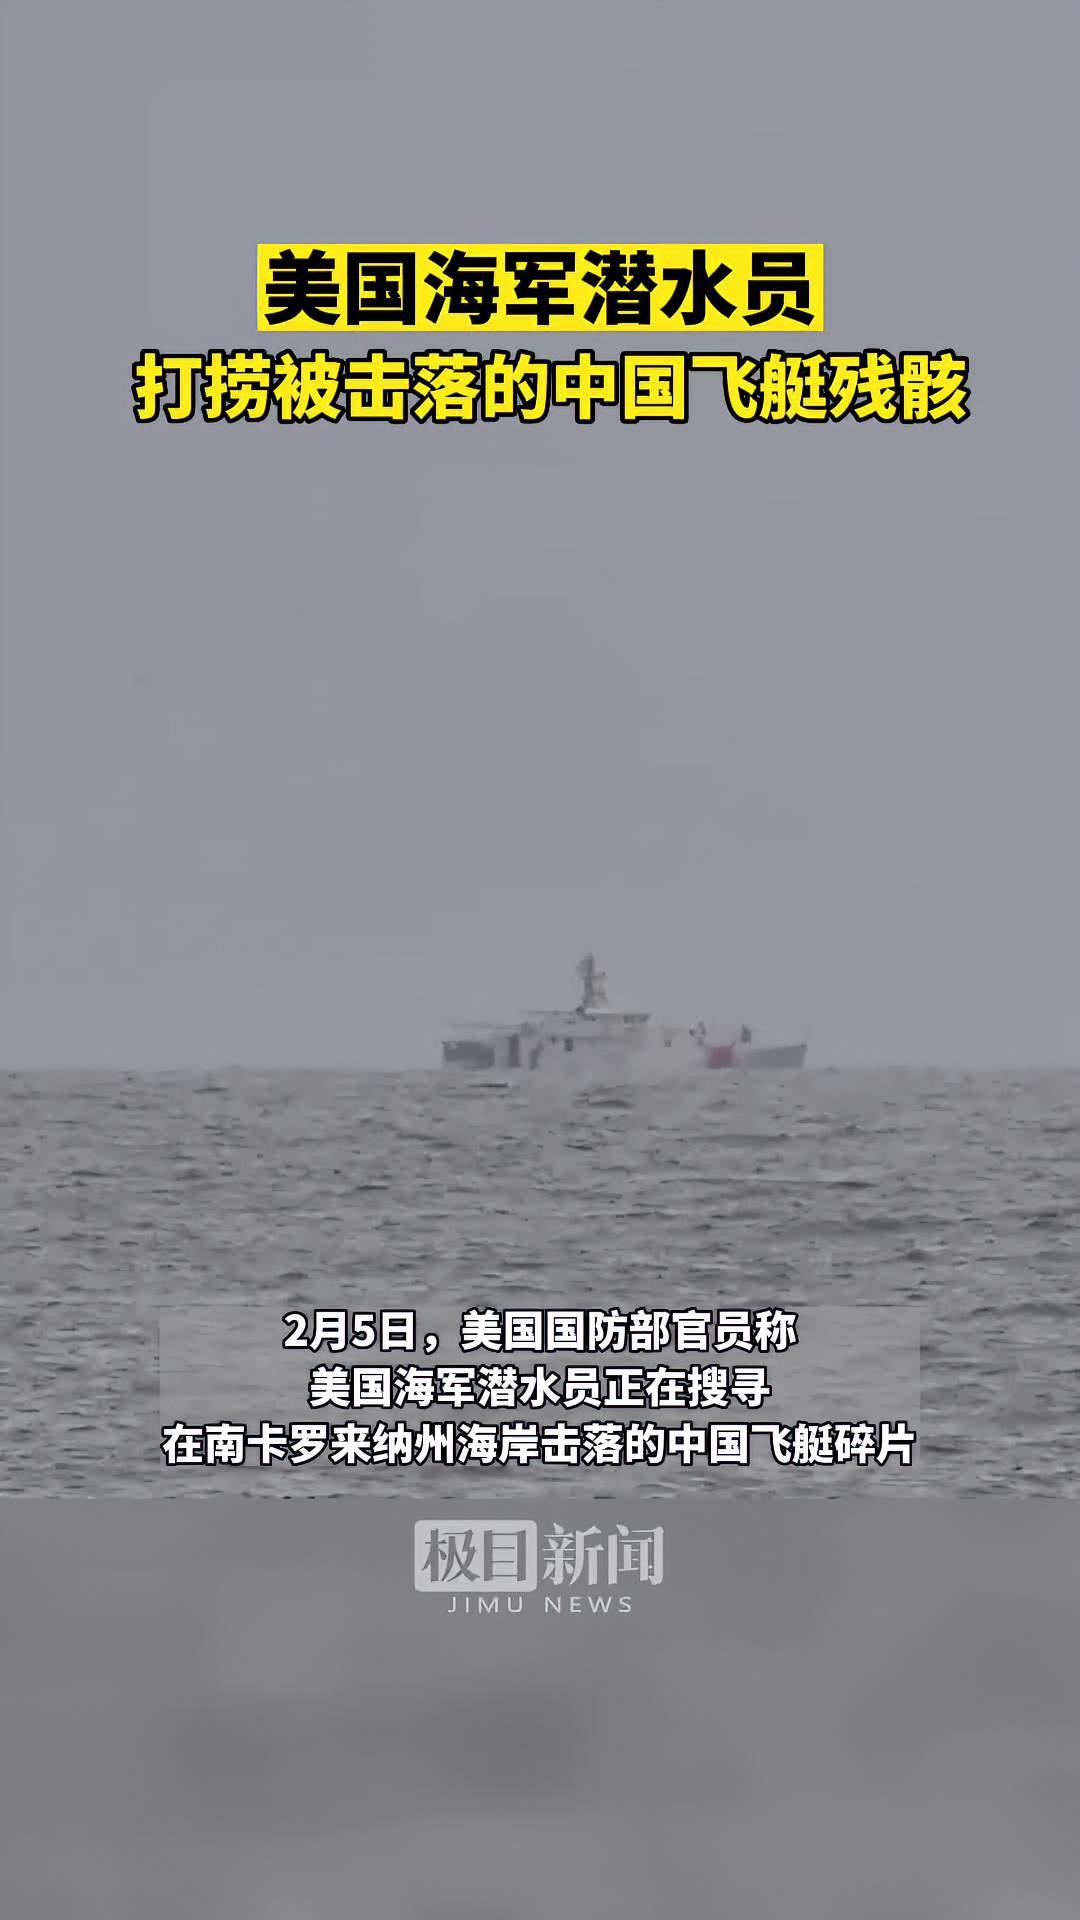 美方击落中国民用无人飞艇 外交部：强烈不满和抗议